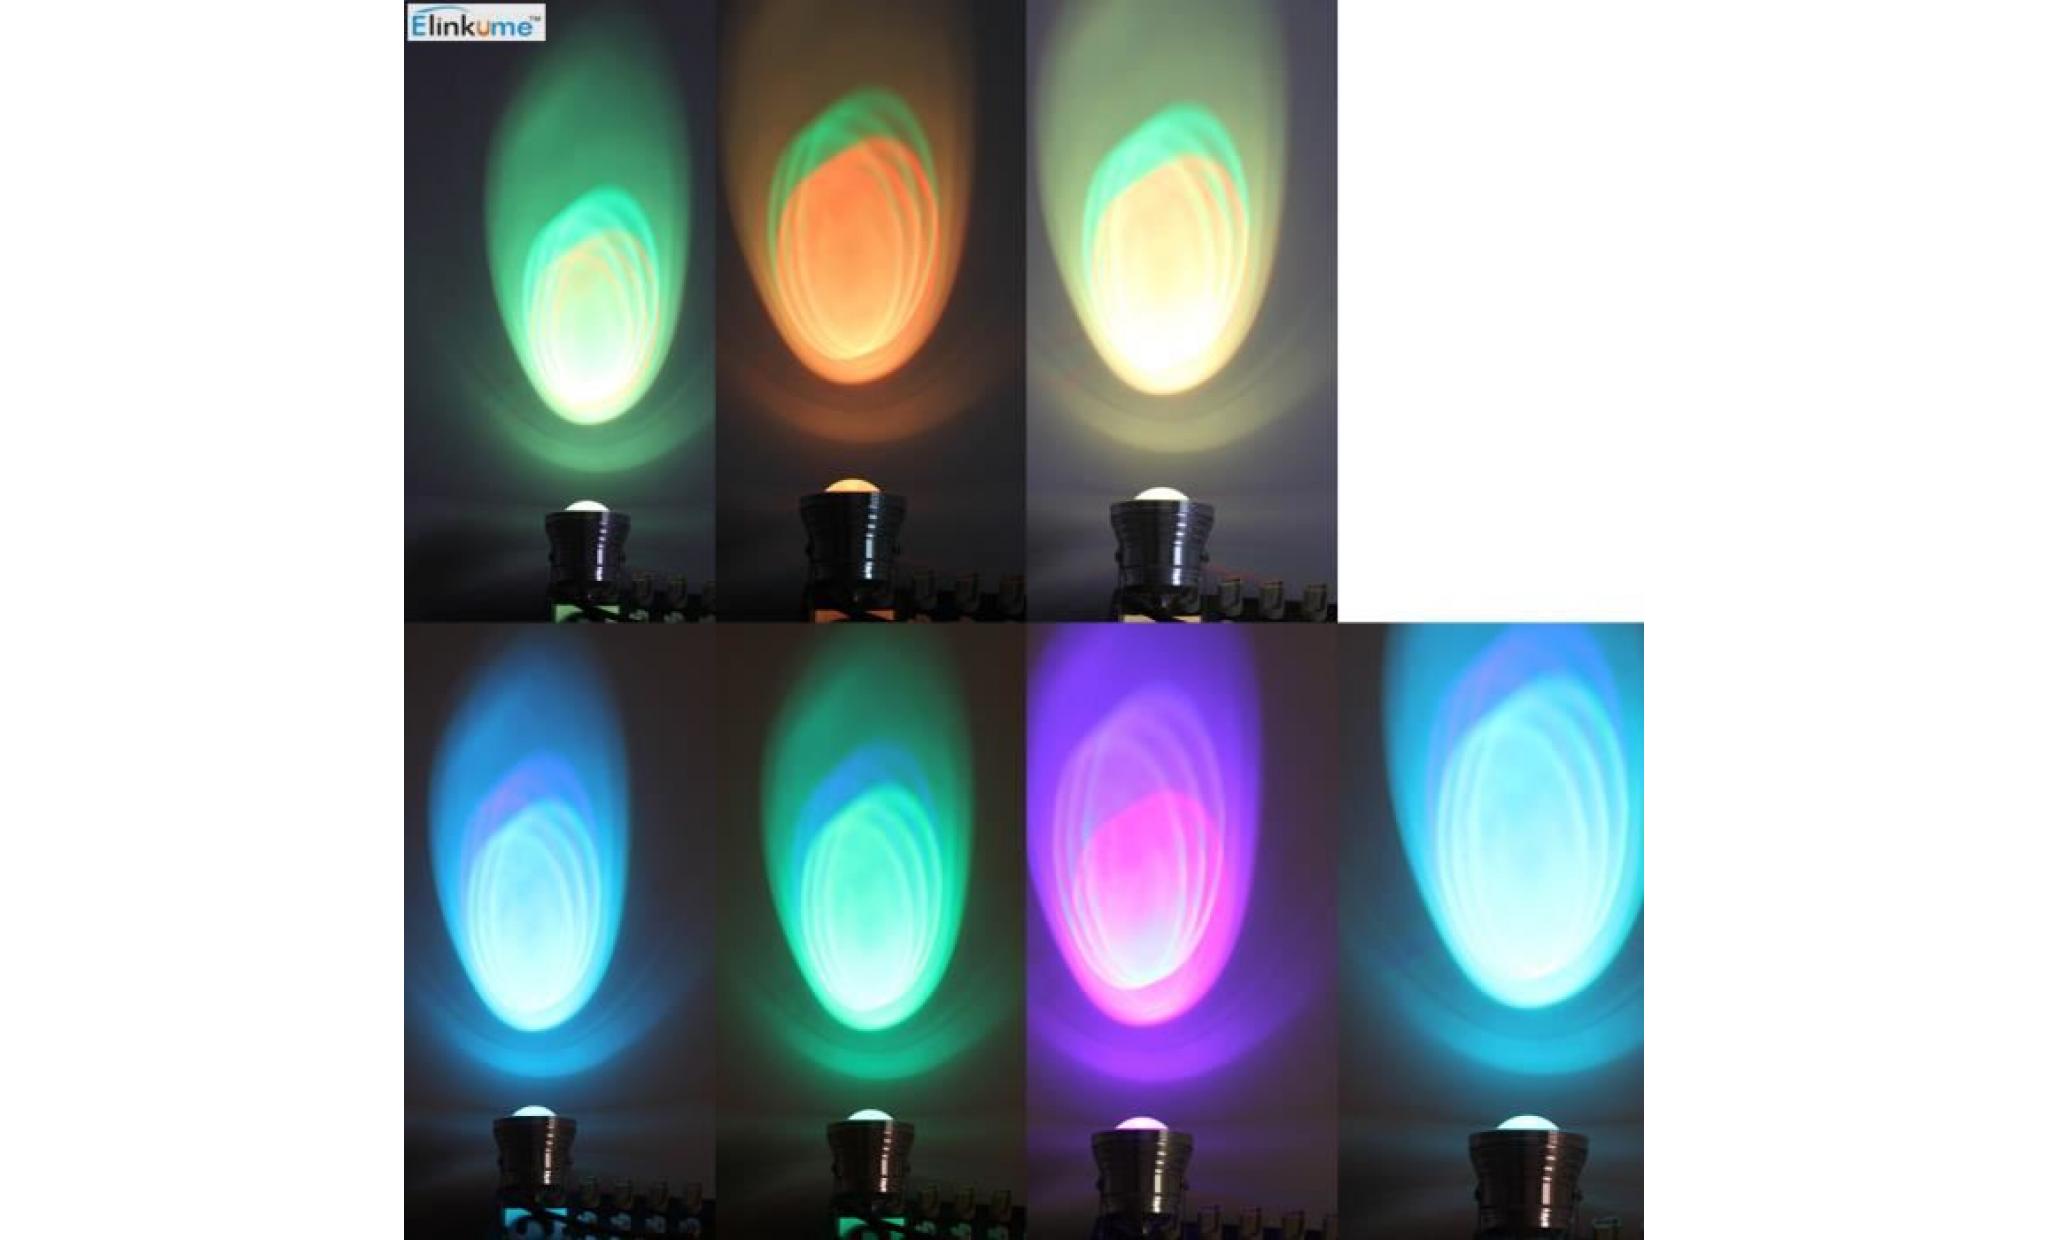 Projecteur LED multicolore 10W RVB projecteur extérieur